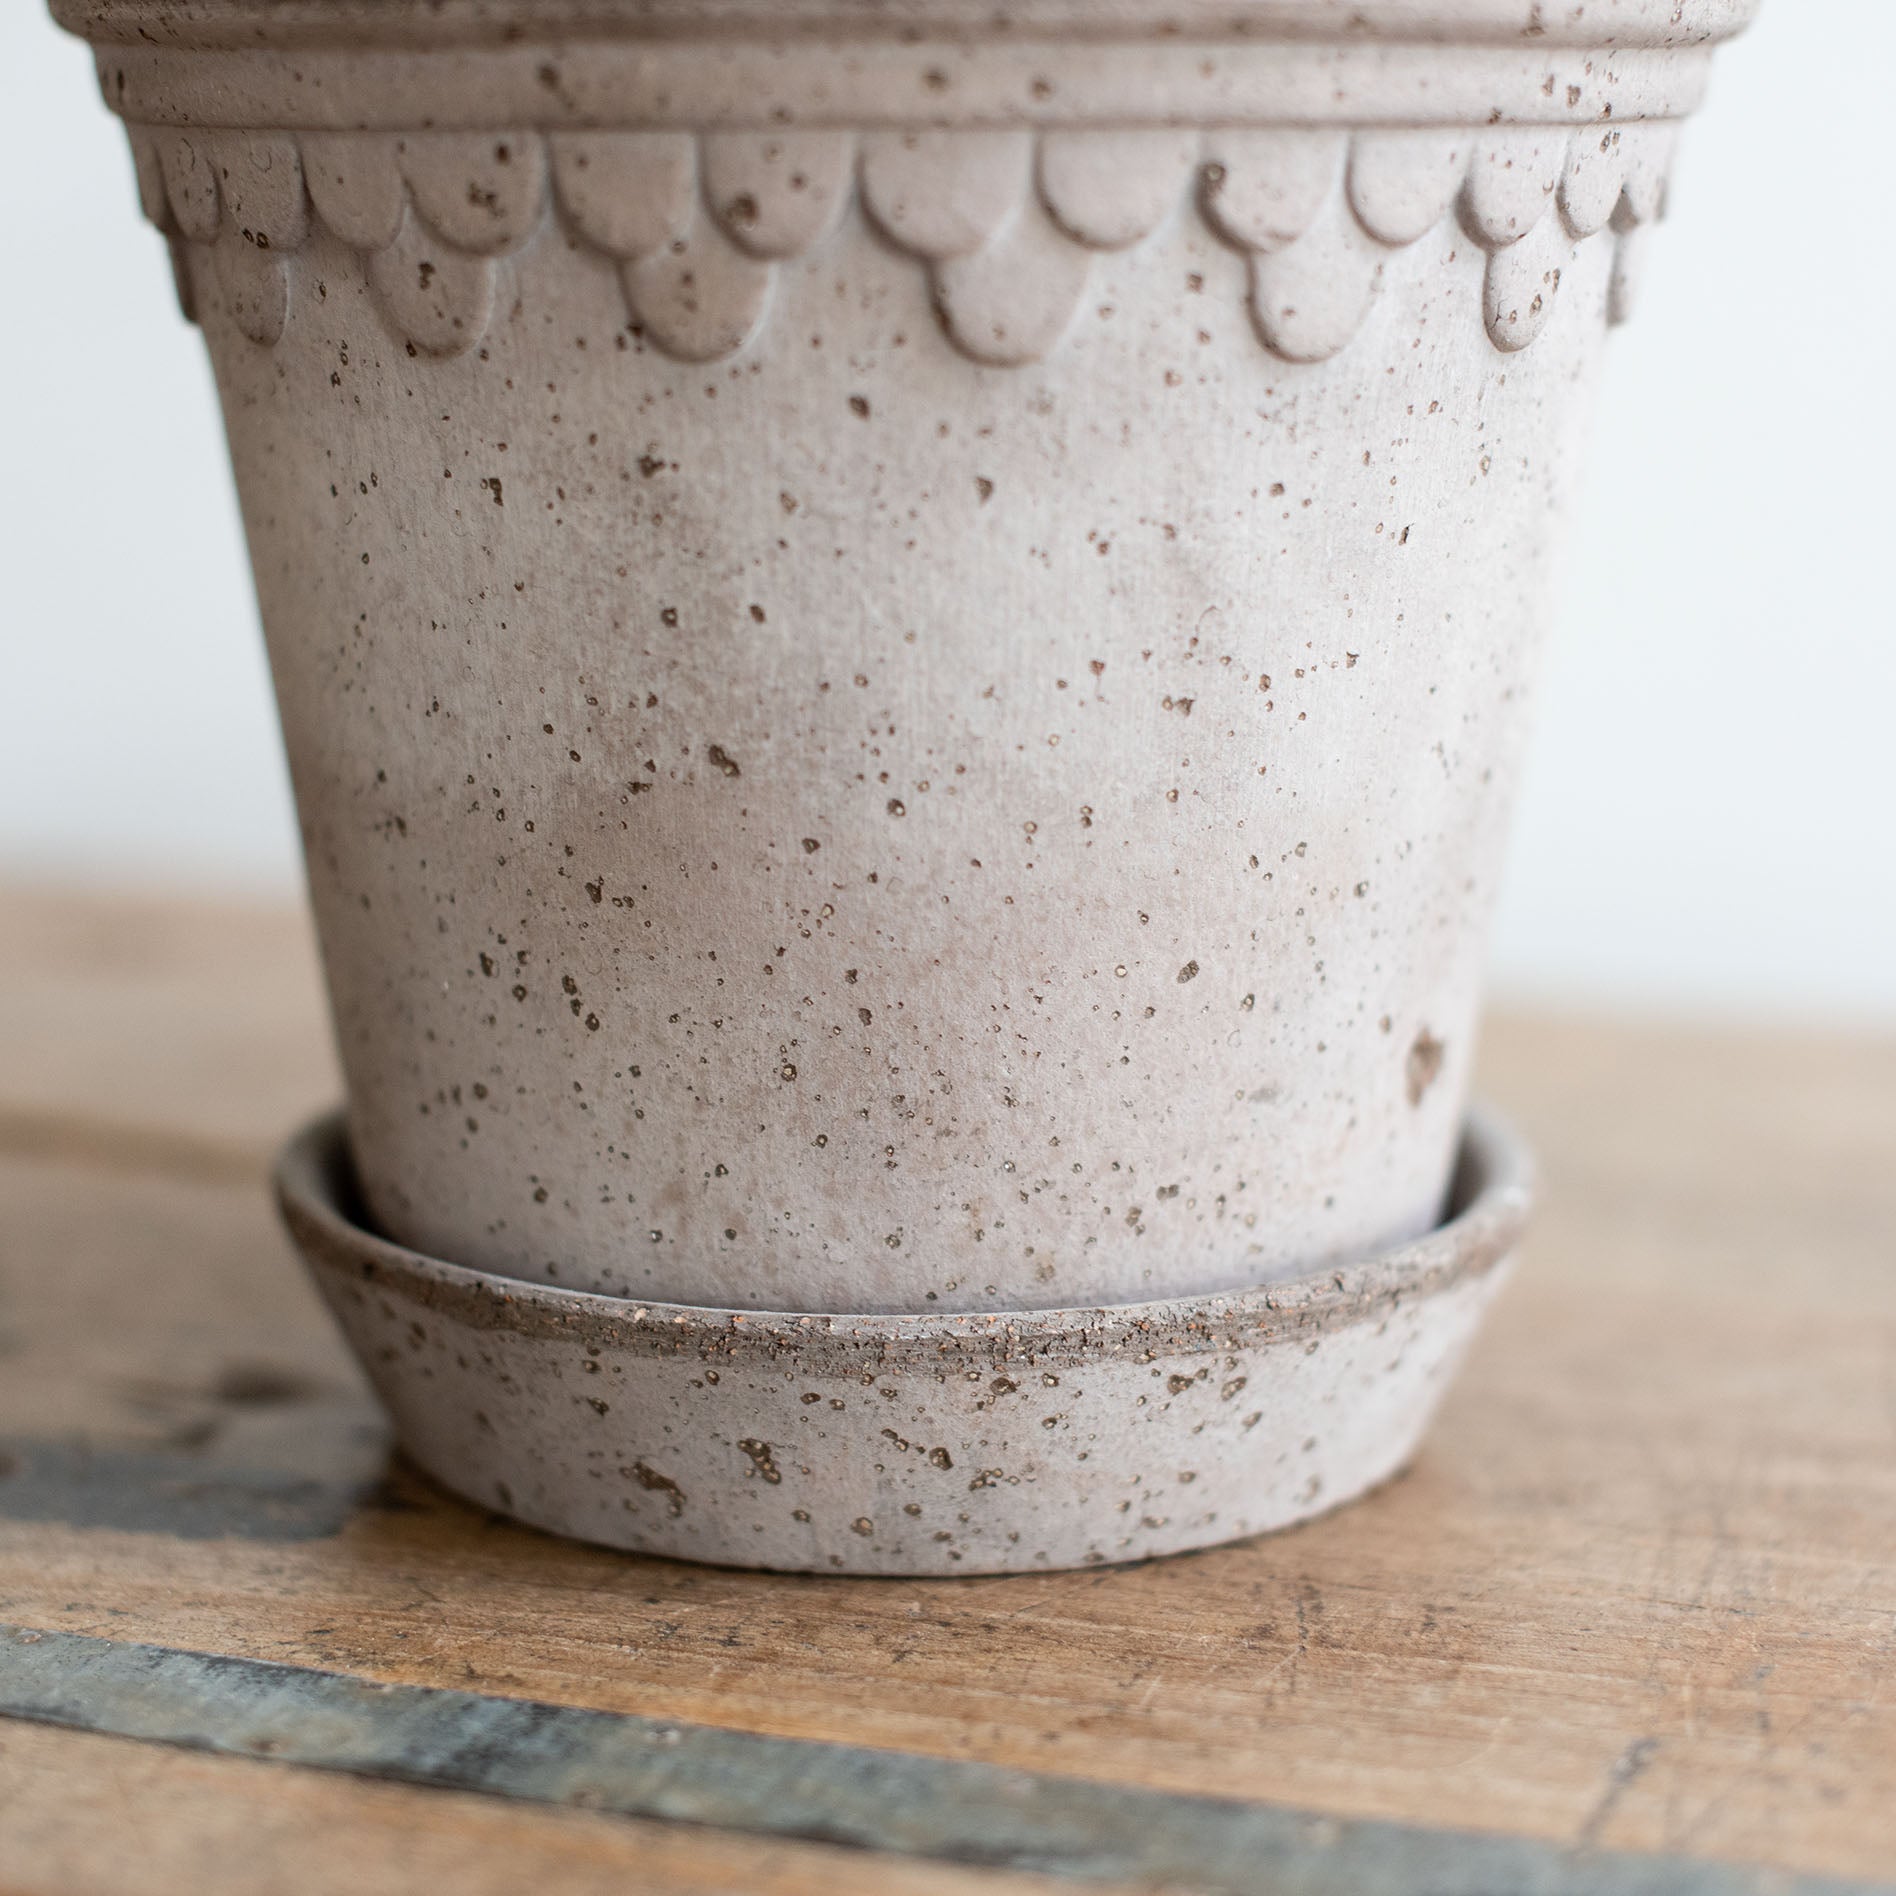 Nahaufnahme eines grauen Keramik Blumentopf mit Untersetzer. Kopenhagener Topf, der auch als Schlosstopf von Bergs bekannt ist, hergestellt von Bergs Potter.